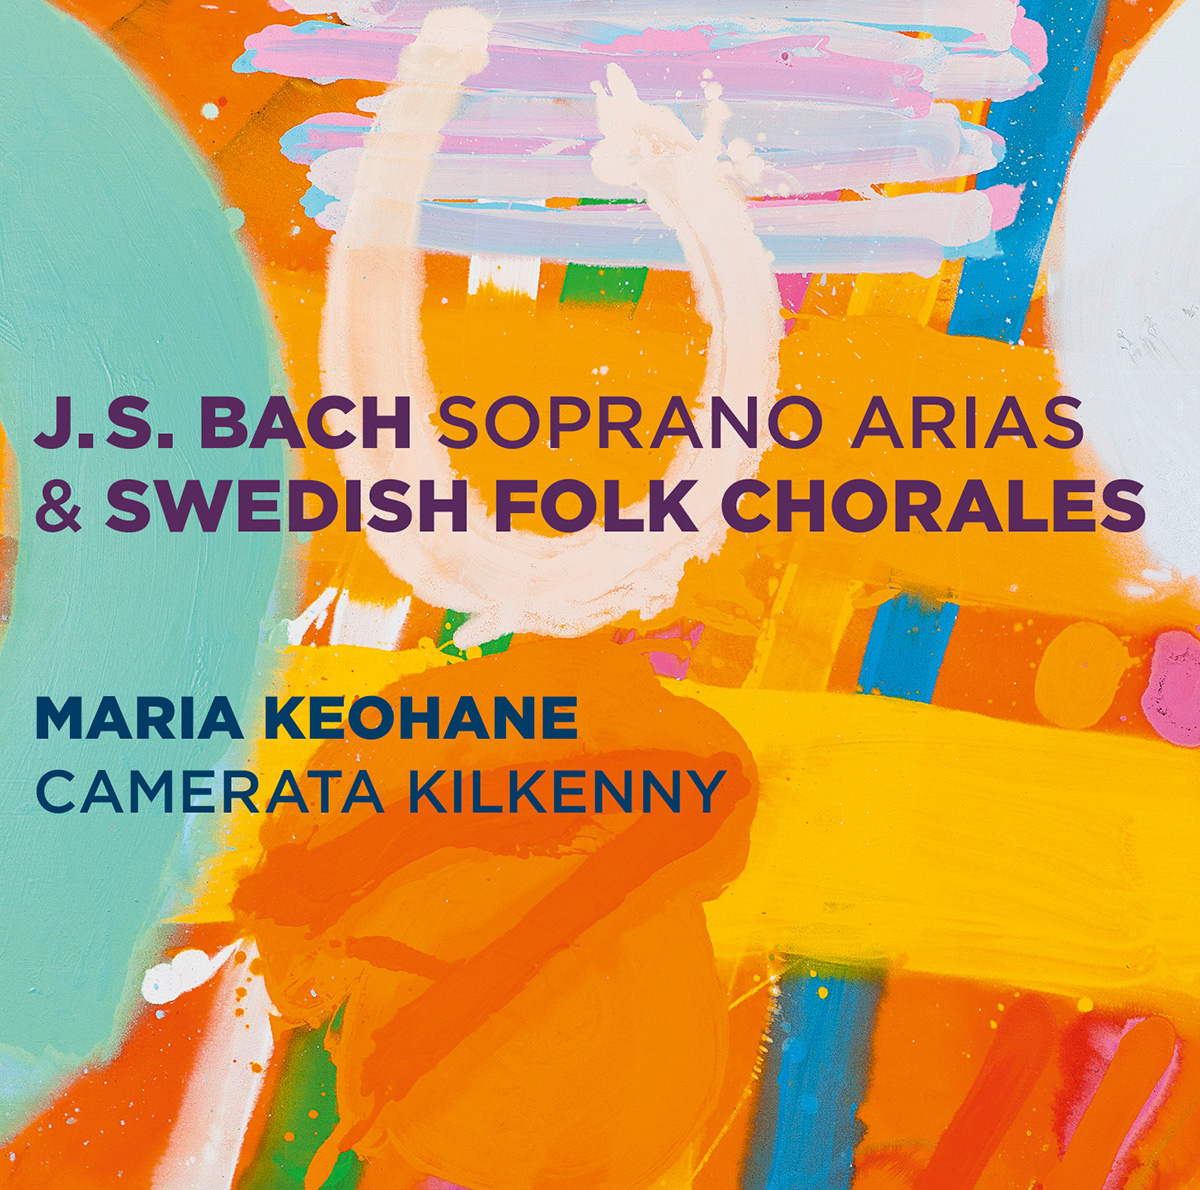 J.S. Bach Soprano Arias